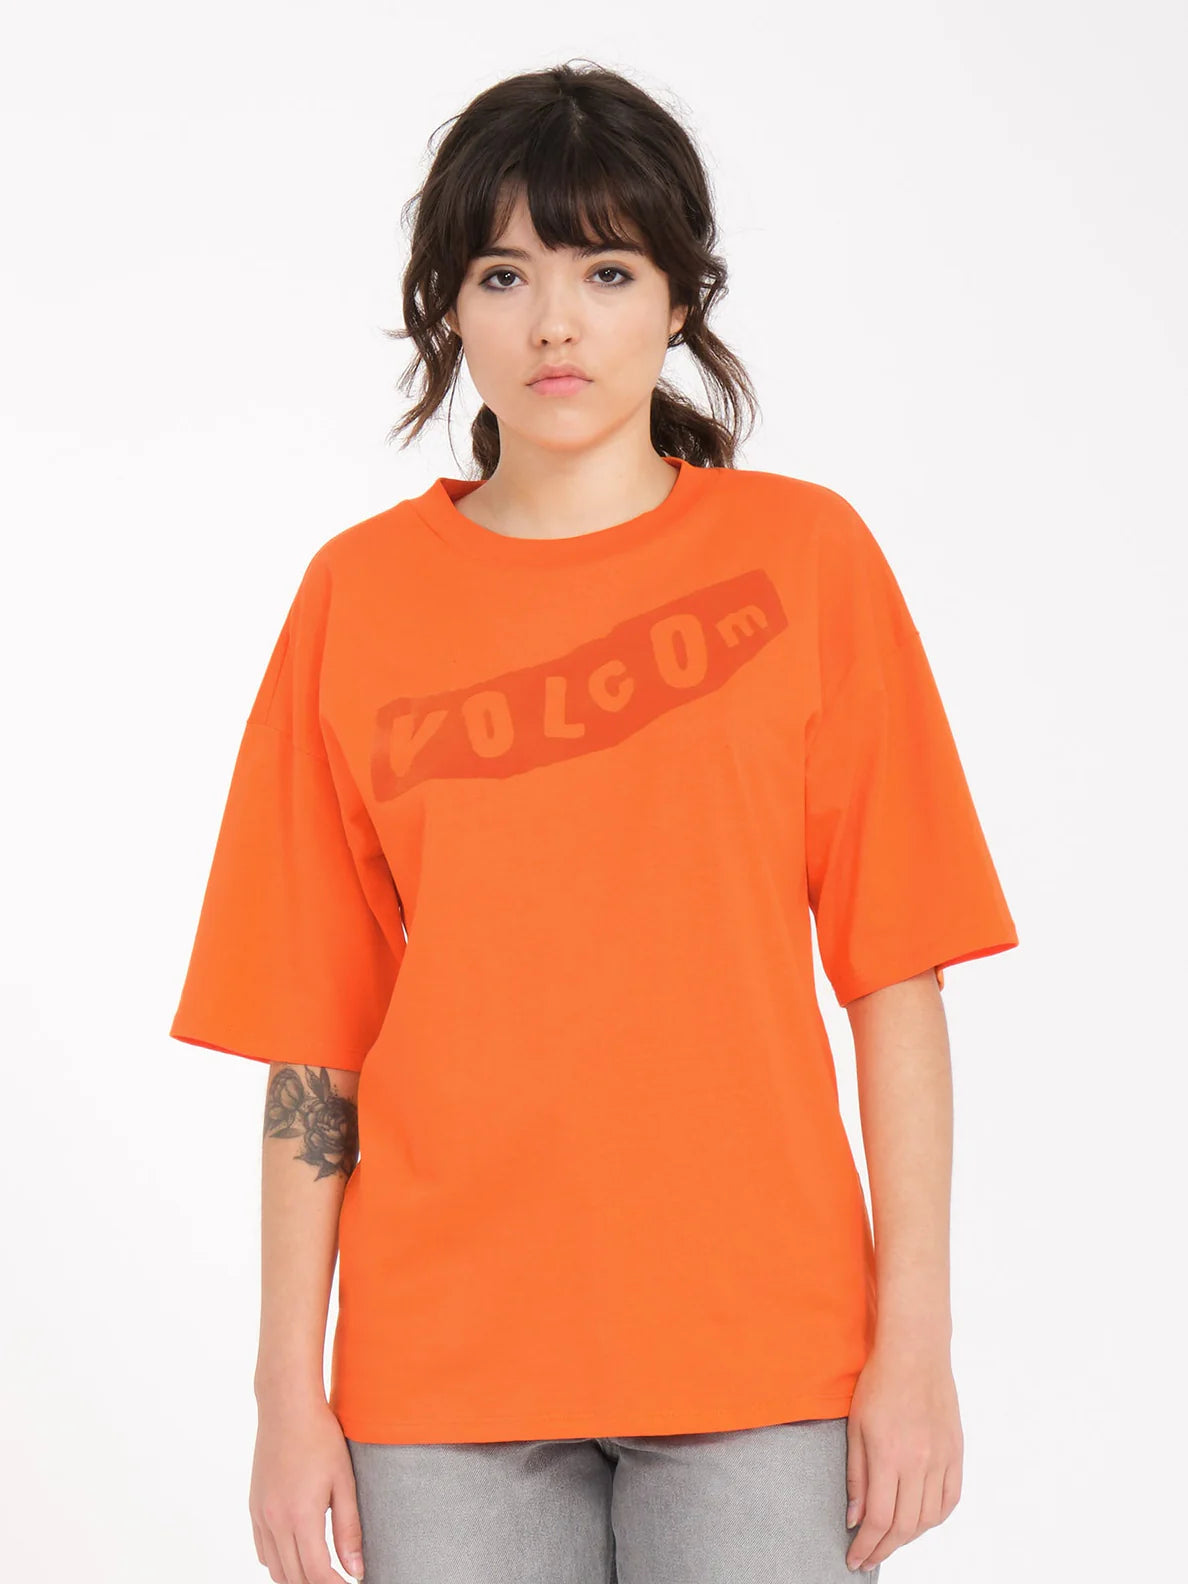 T-shirt Fille Volcom Pistol - Carotte | Boutique Volcom | Collection_Zalando | Nouveaux produits | Produits les plus récents | Produits les plus vendus | T-shirts manches courtes femme | surfdevils.com